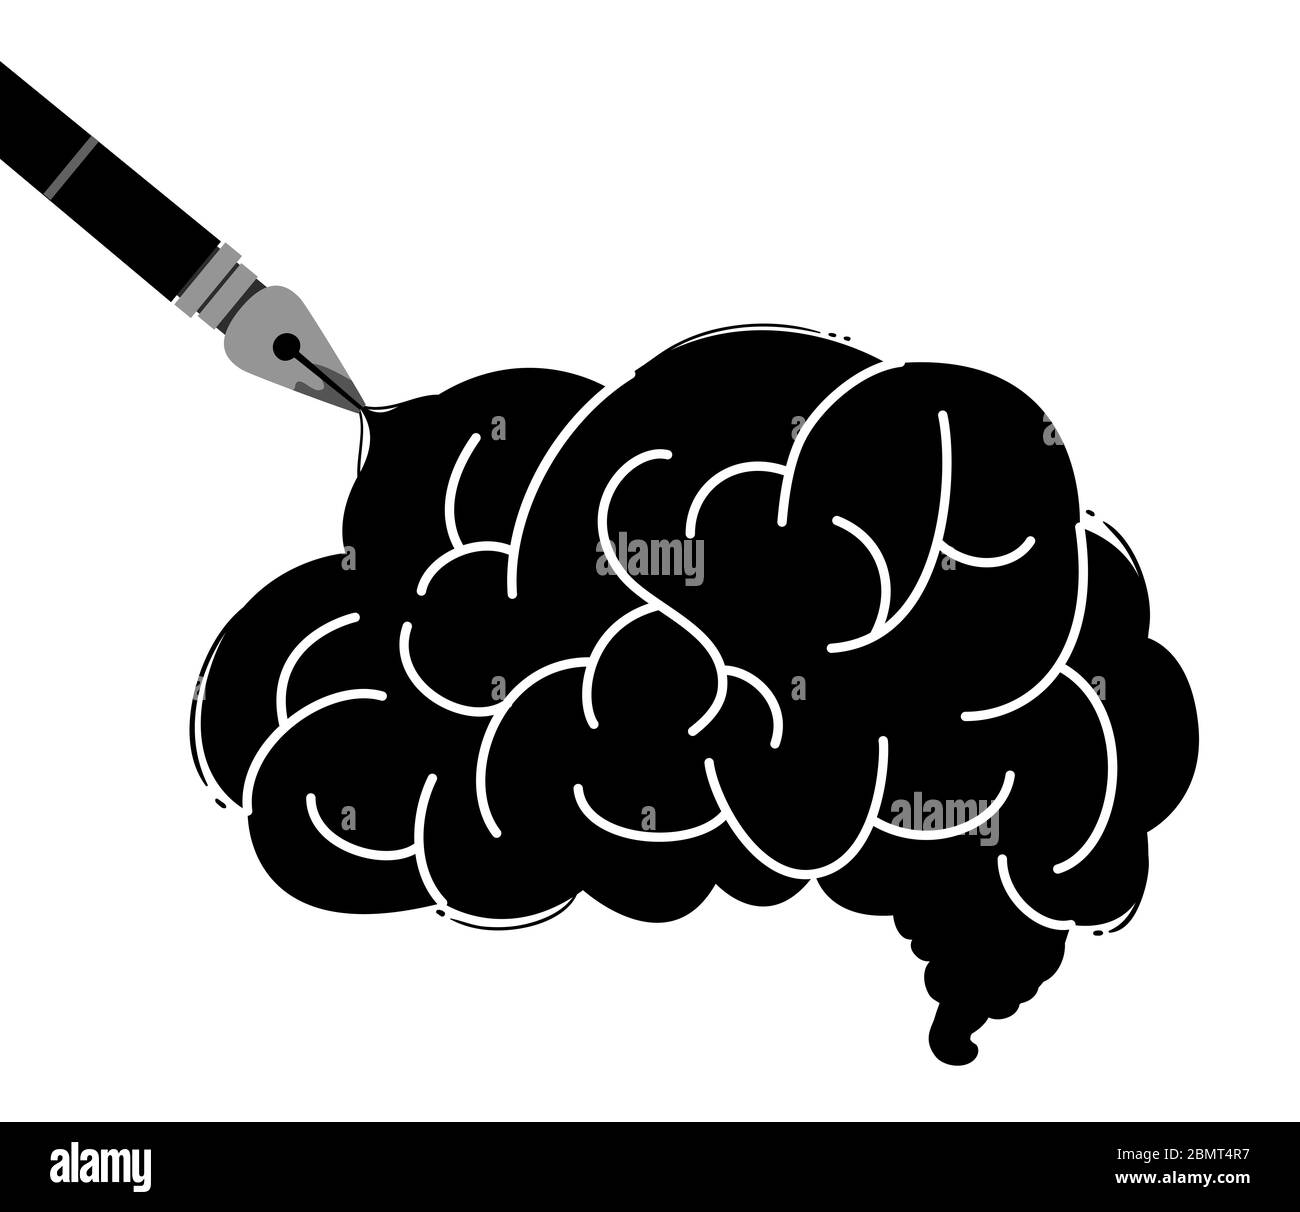 Illustration d'un cerveau noir tiré d'un stylo de fontaine Banque D'Images